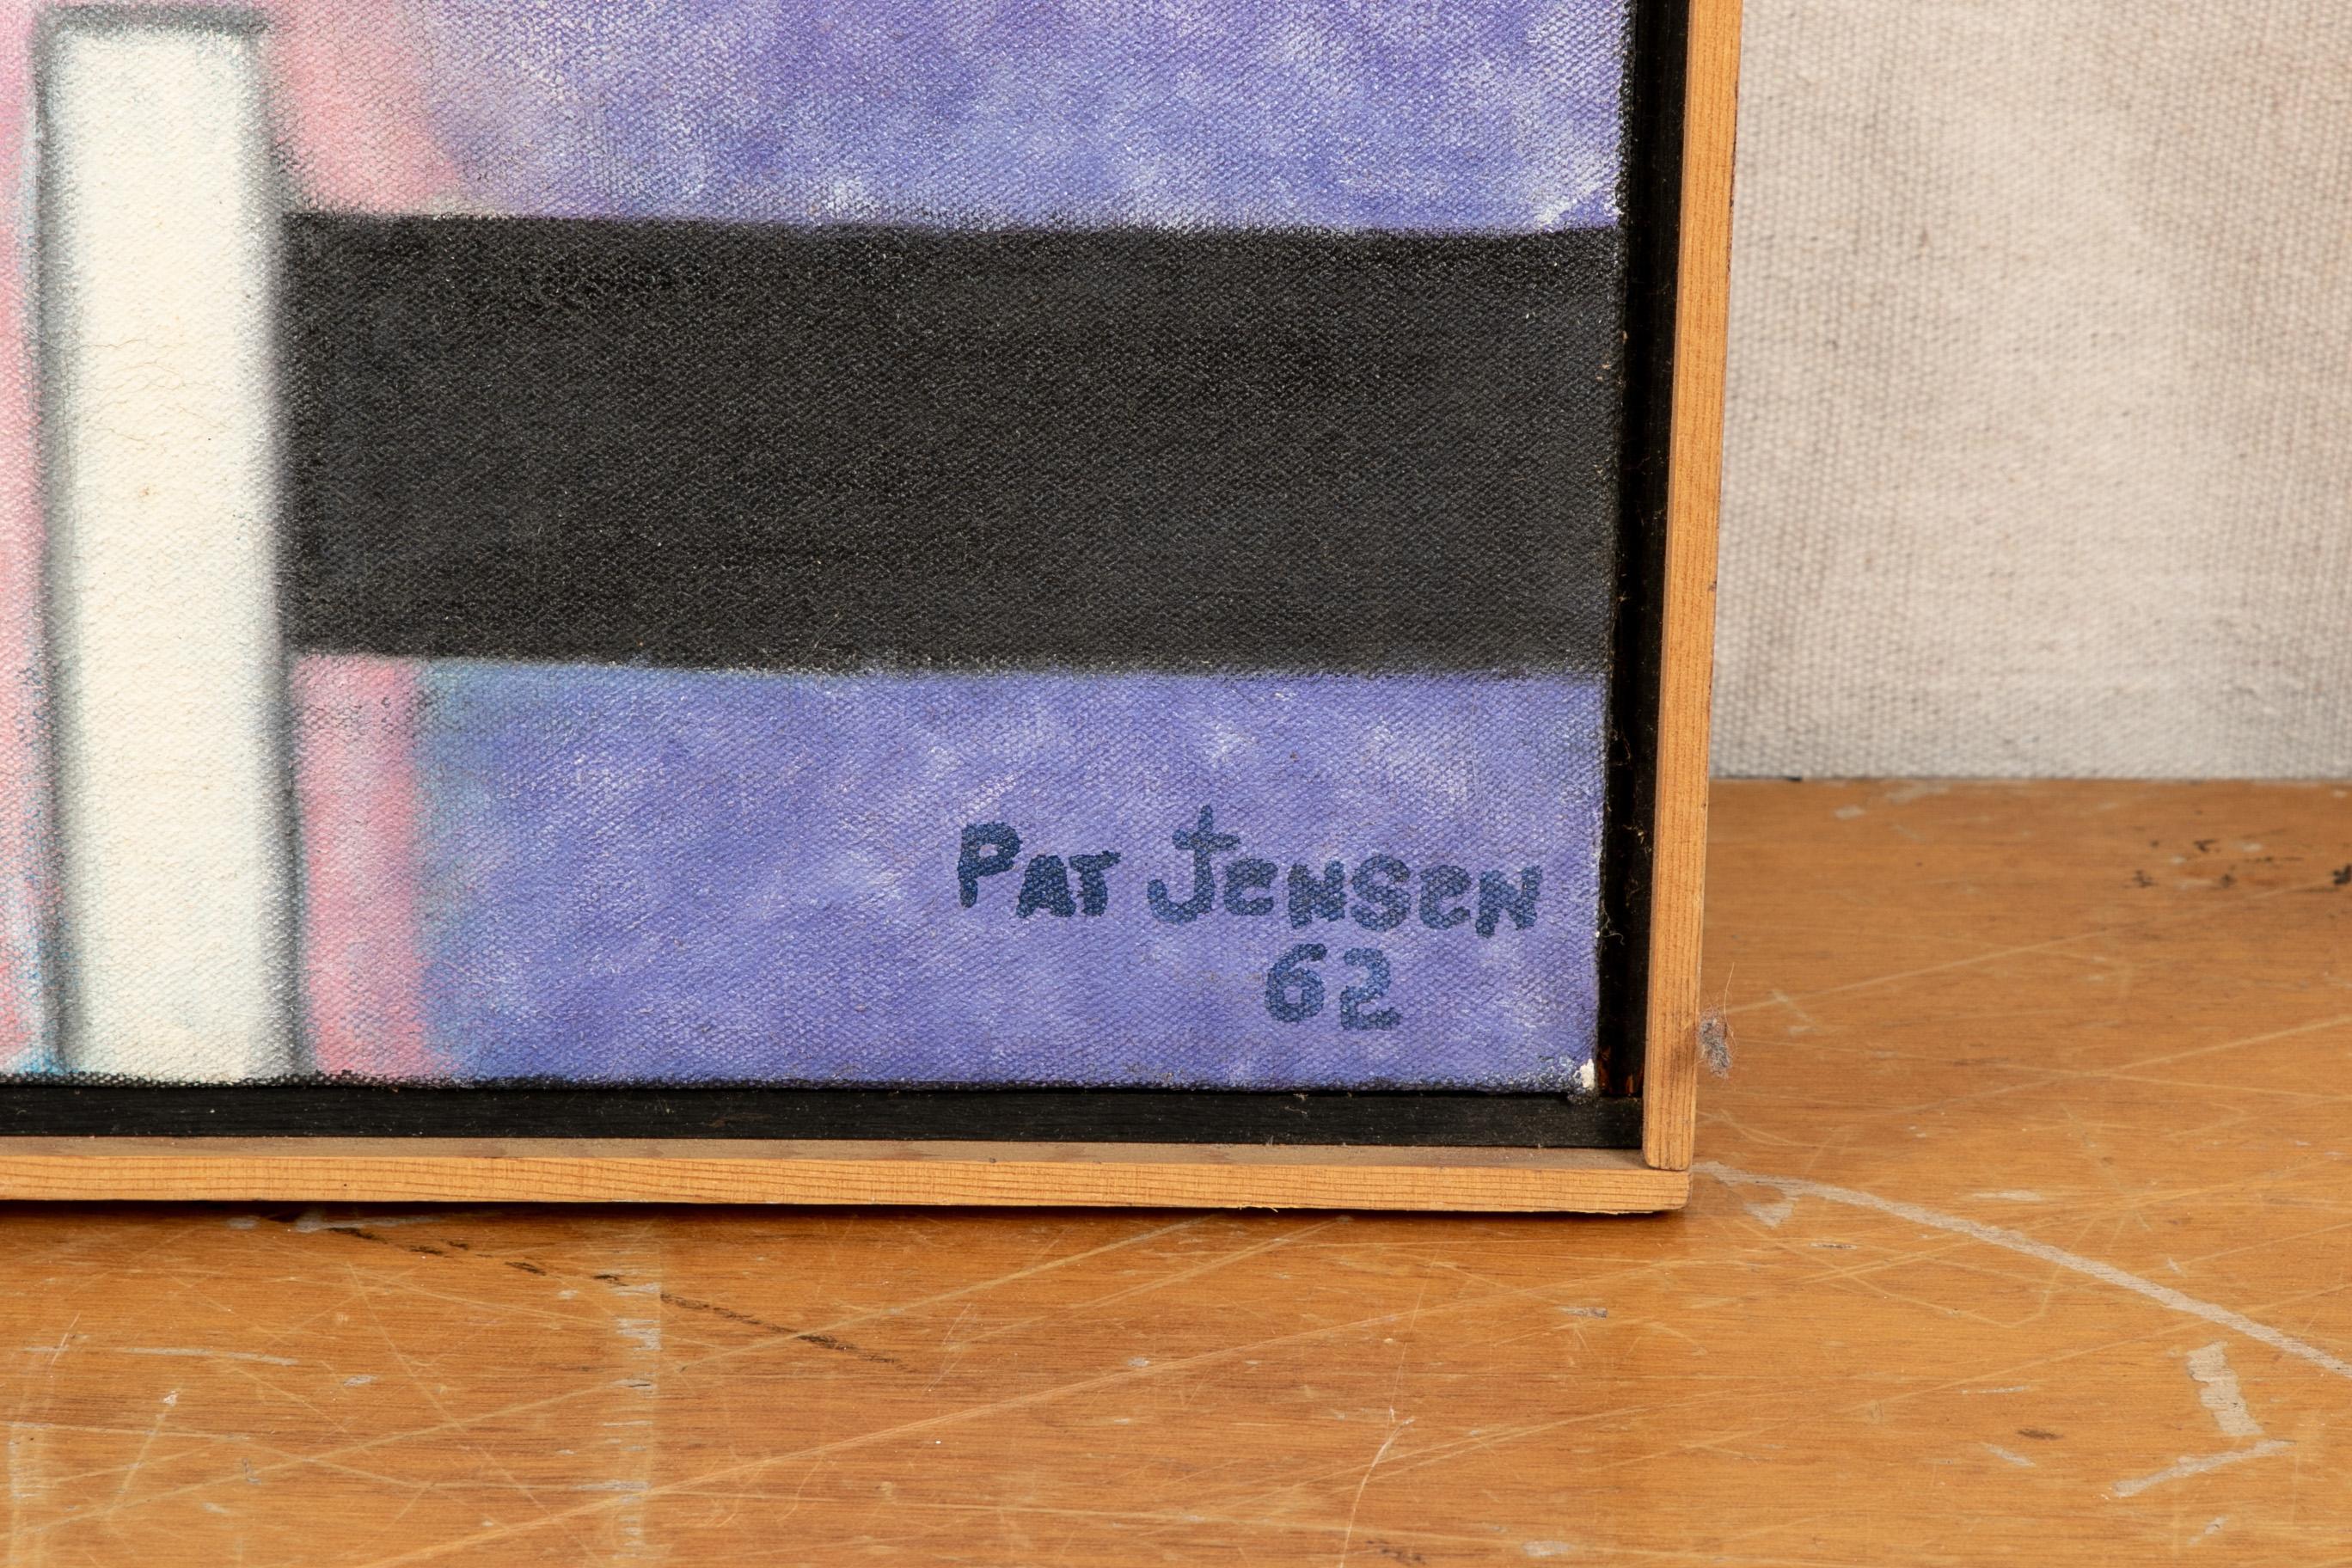 20th Century Pat Jensen Oil On Canvas, 